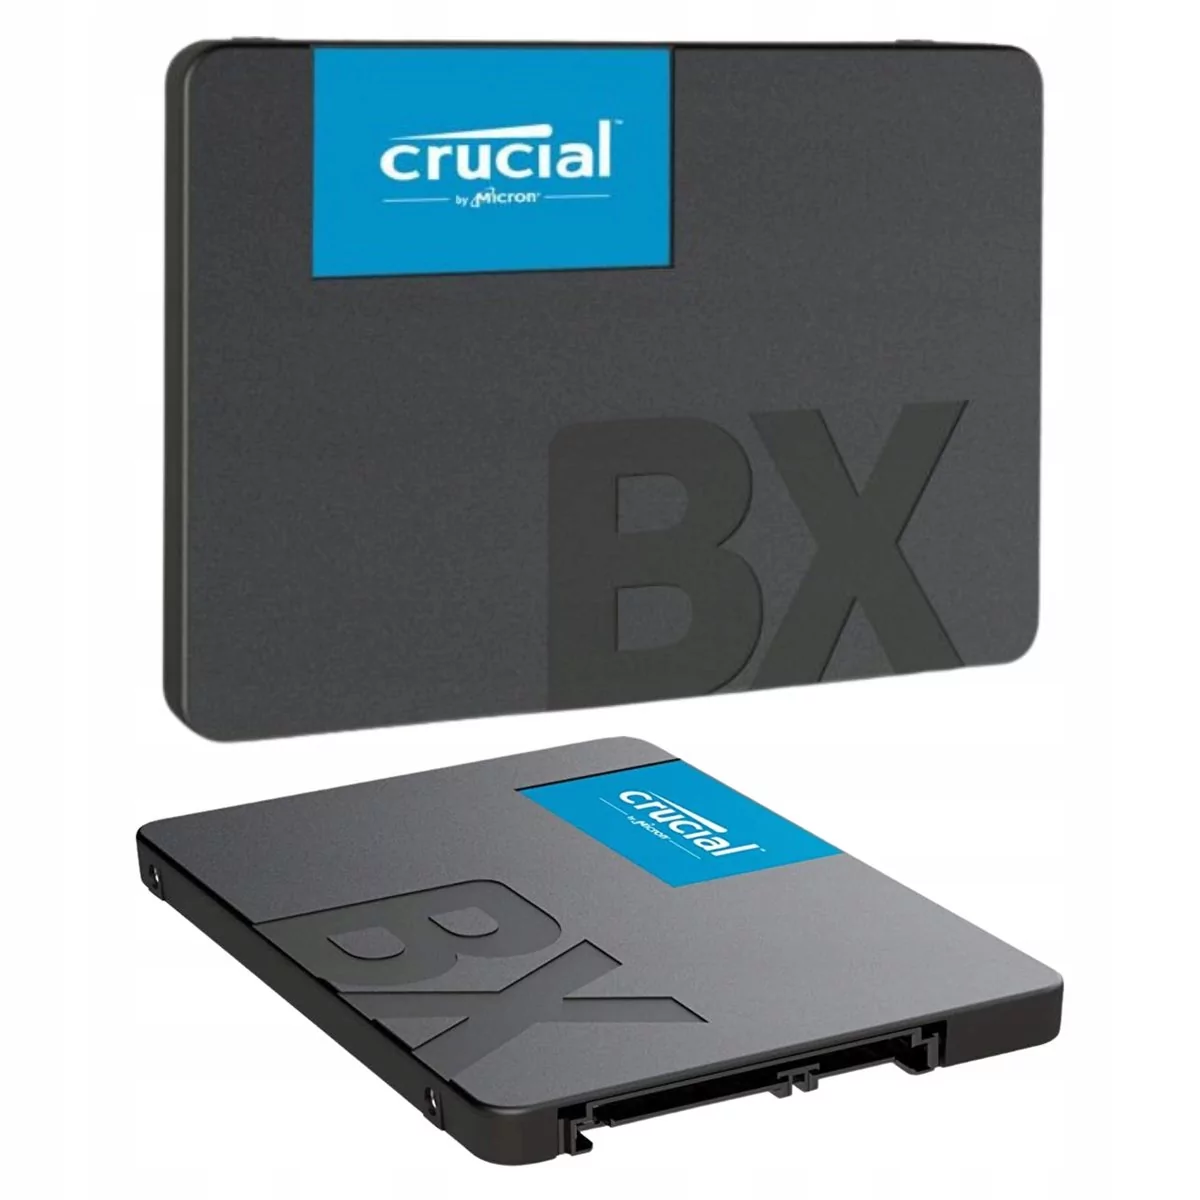 DYSK SSD CRUCIAL BX500 500GB SATA TLC SZYBKI